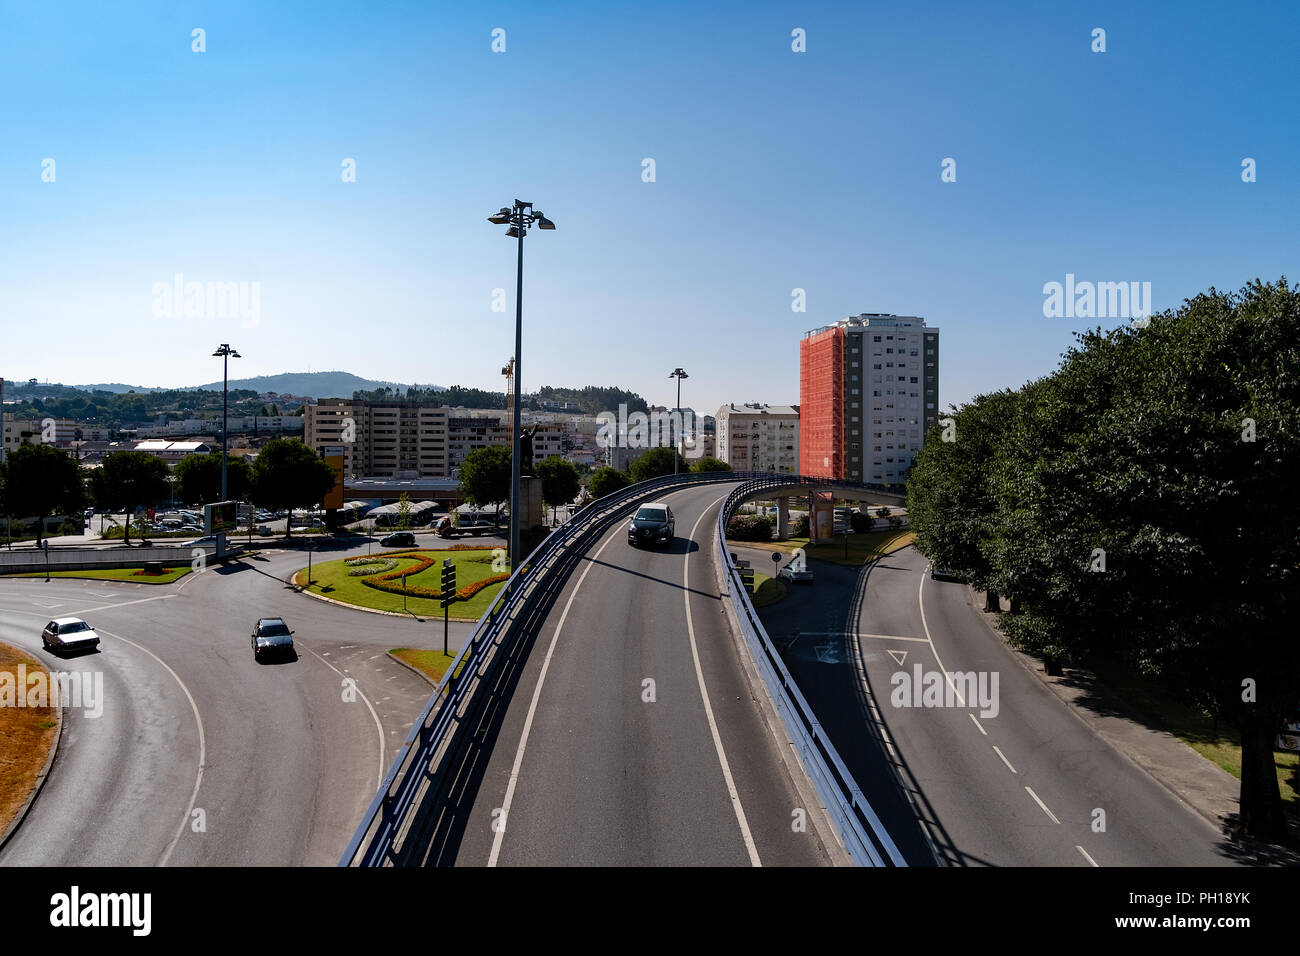 Autopistas y avenidas pavimentadas de una ciudad normal componer un sitio urbano Foto de stock